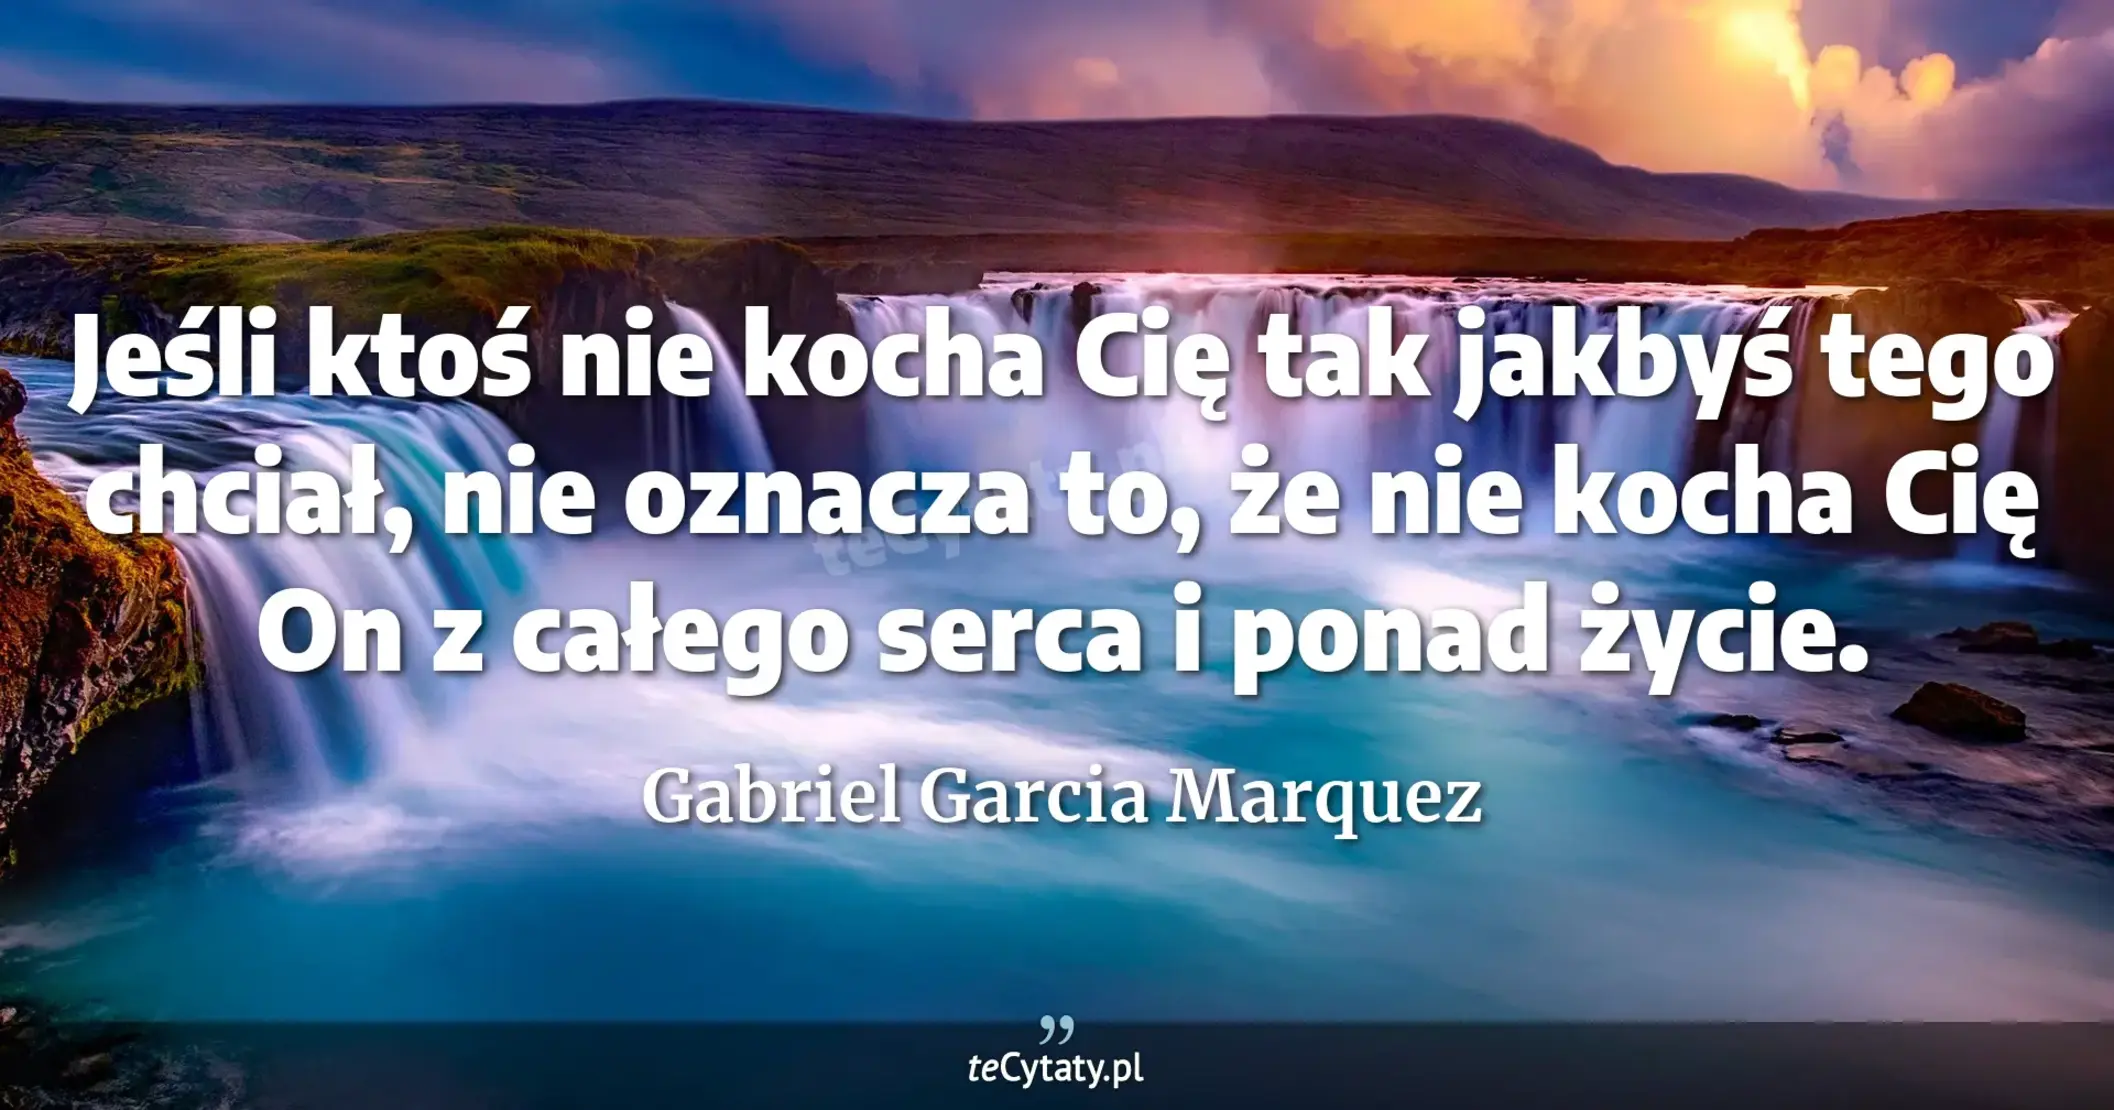 Jeśli ktoś nie kocha Cię tak jakbyś tego chciał, nie oznacza to, że nie kocha Cię On z całego serca i ponad życie. - Gabriel Garcia Marquez